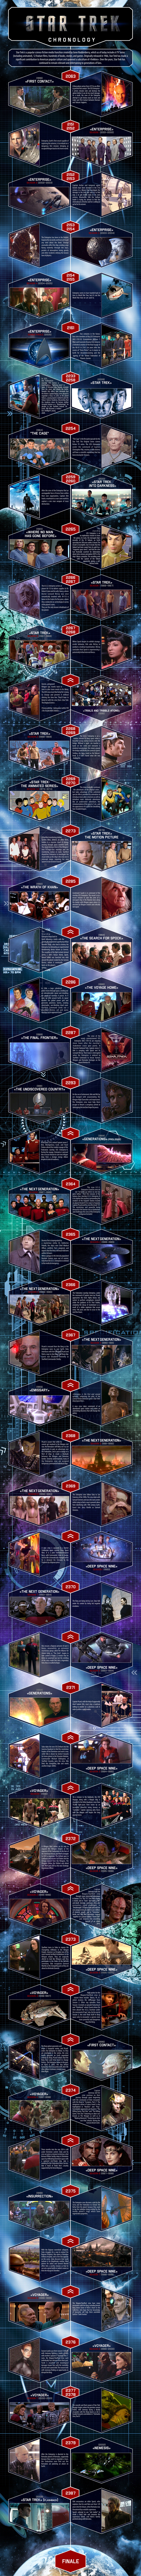 Star Trek Chronology